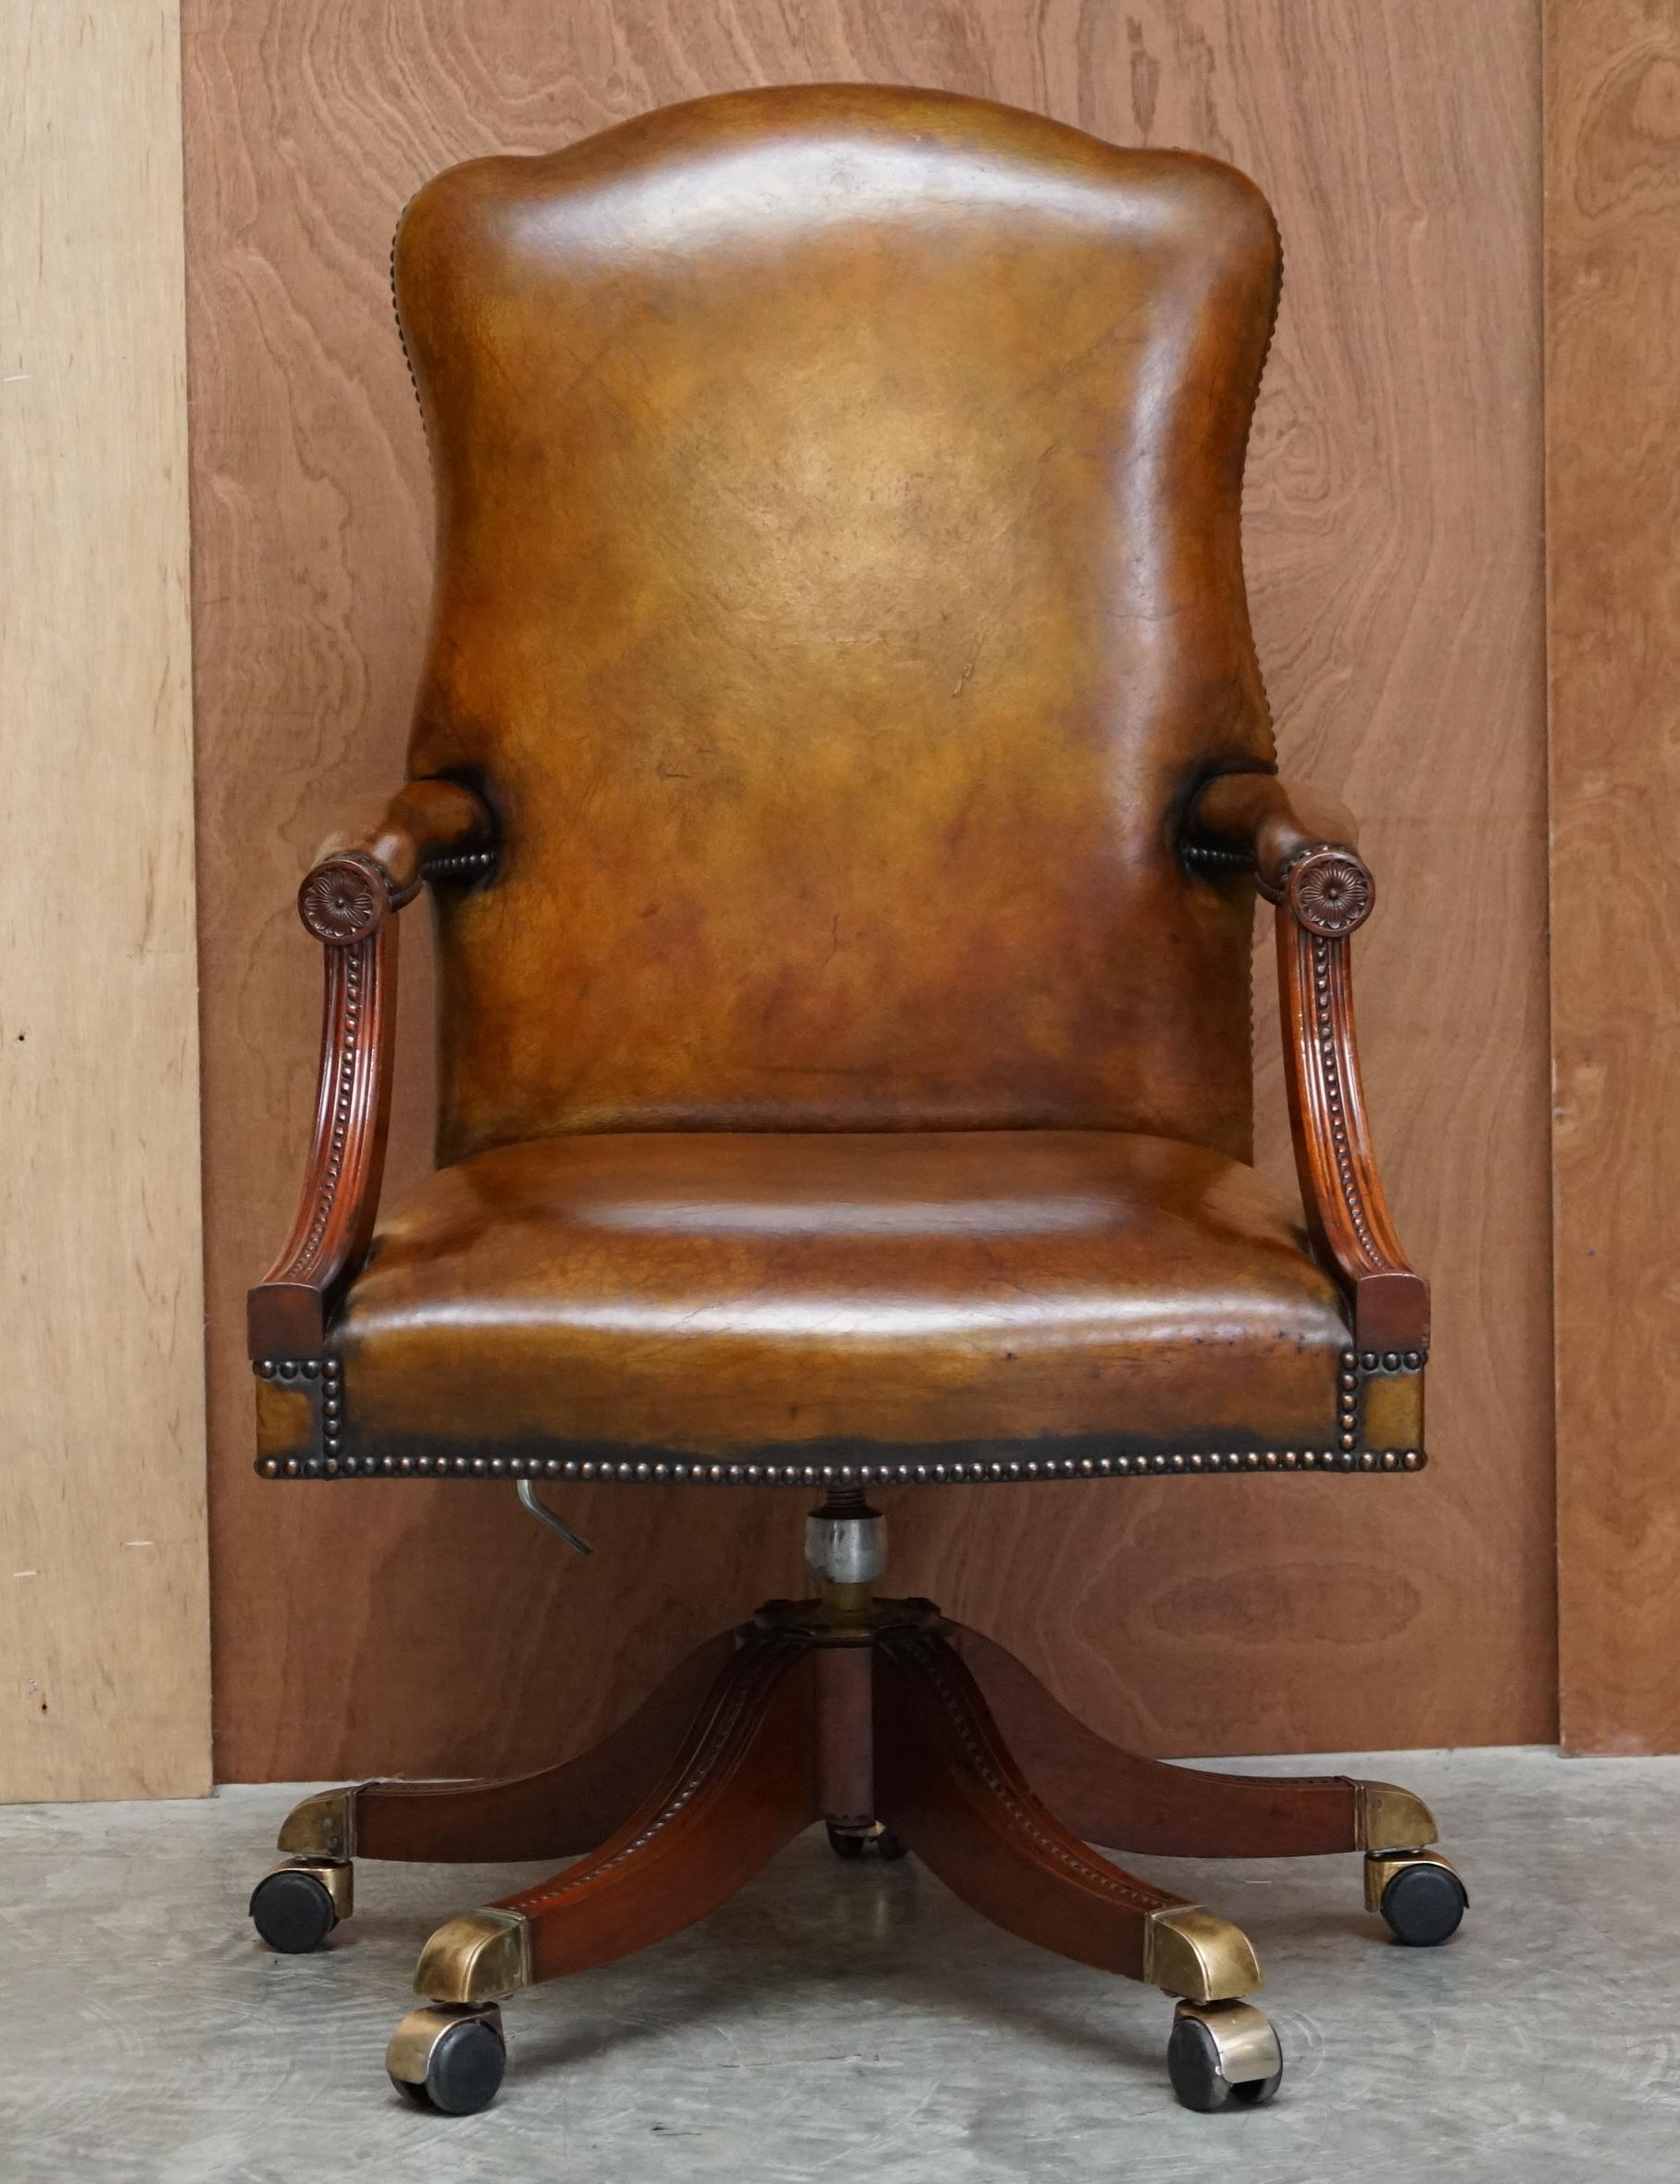 Nous sommes ravis d'offrir à la vente cette belle chaise de directeur en cuir brun cigare teint à la main, entièrement restaurée et encadrée de chêne.

Veuillez noter que les frais de livraison indiqués sont donnés à titre indicatif. Ils couvrent